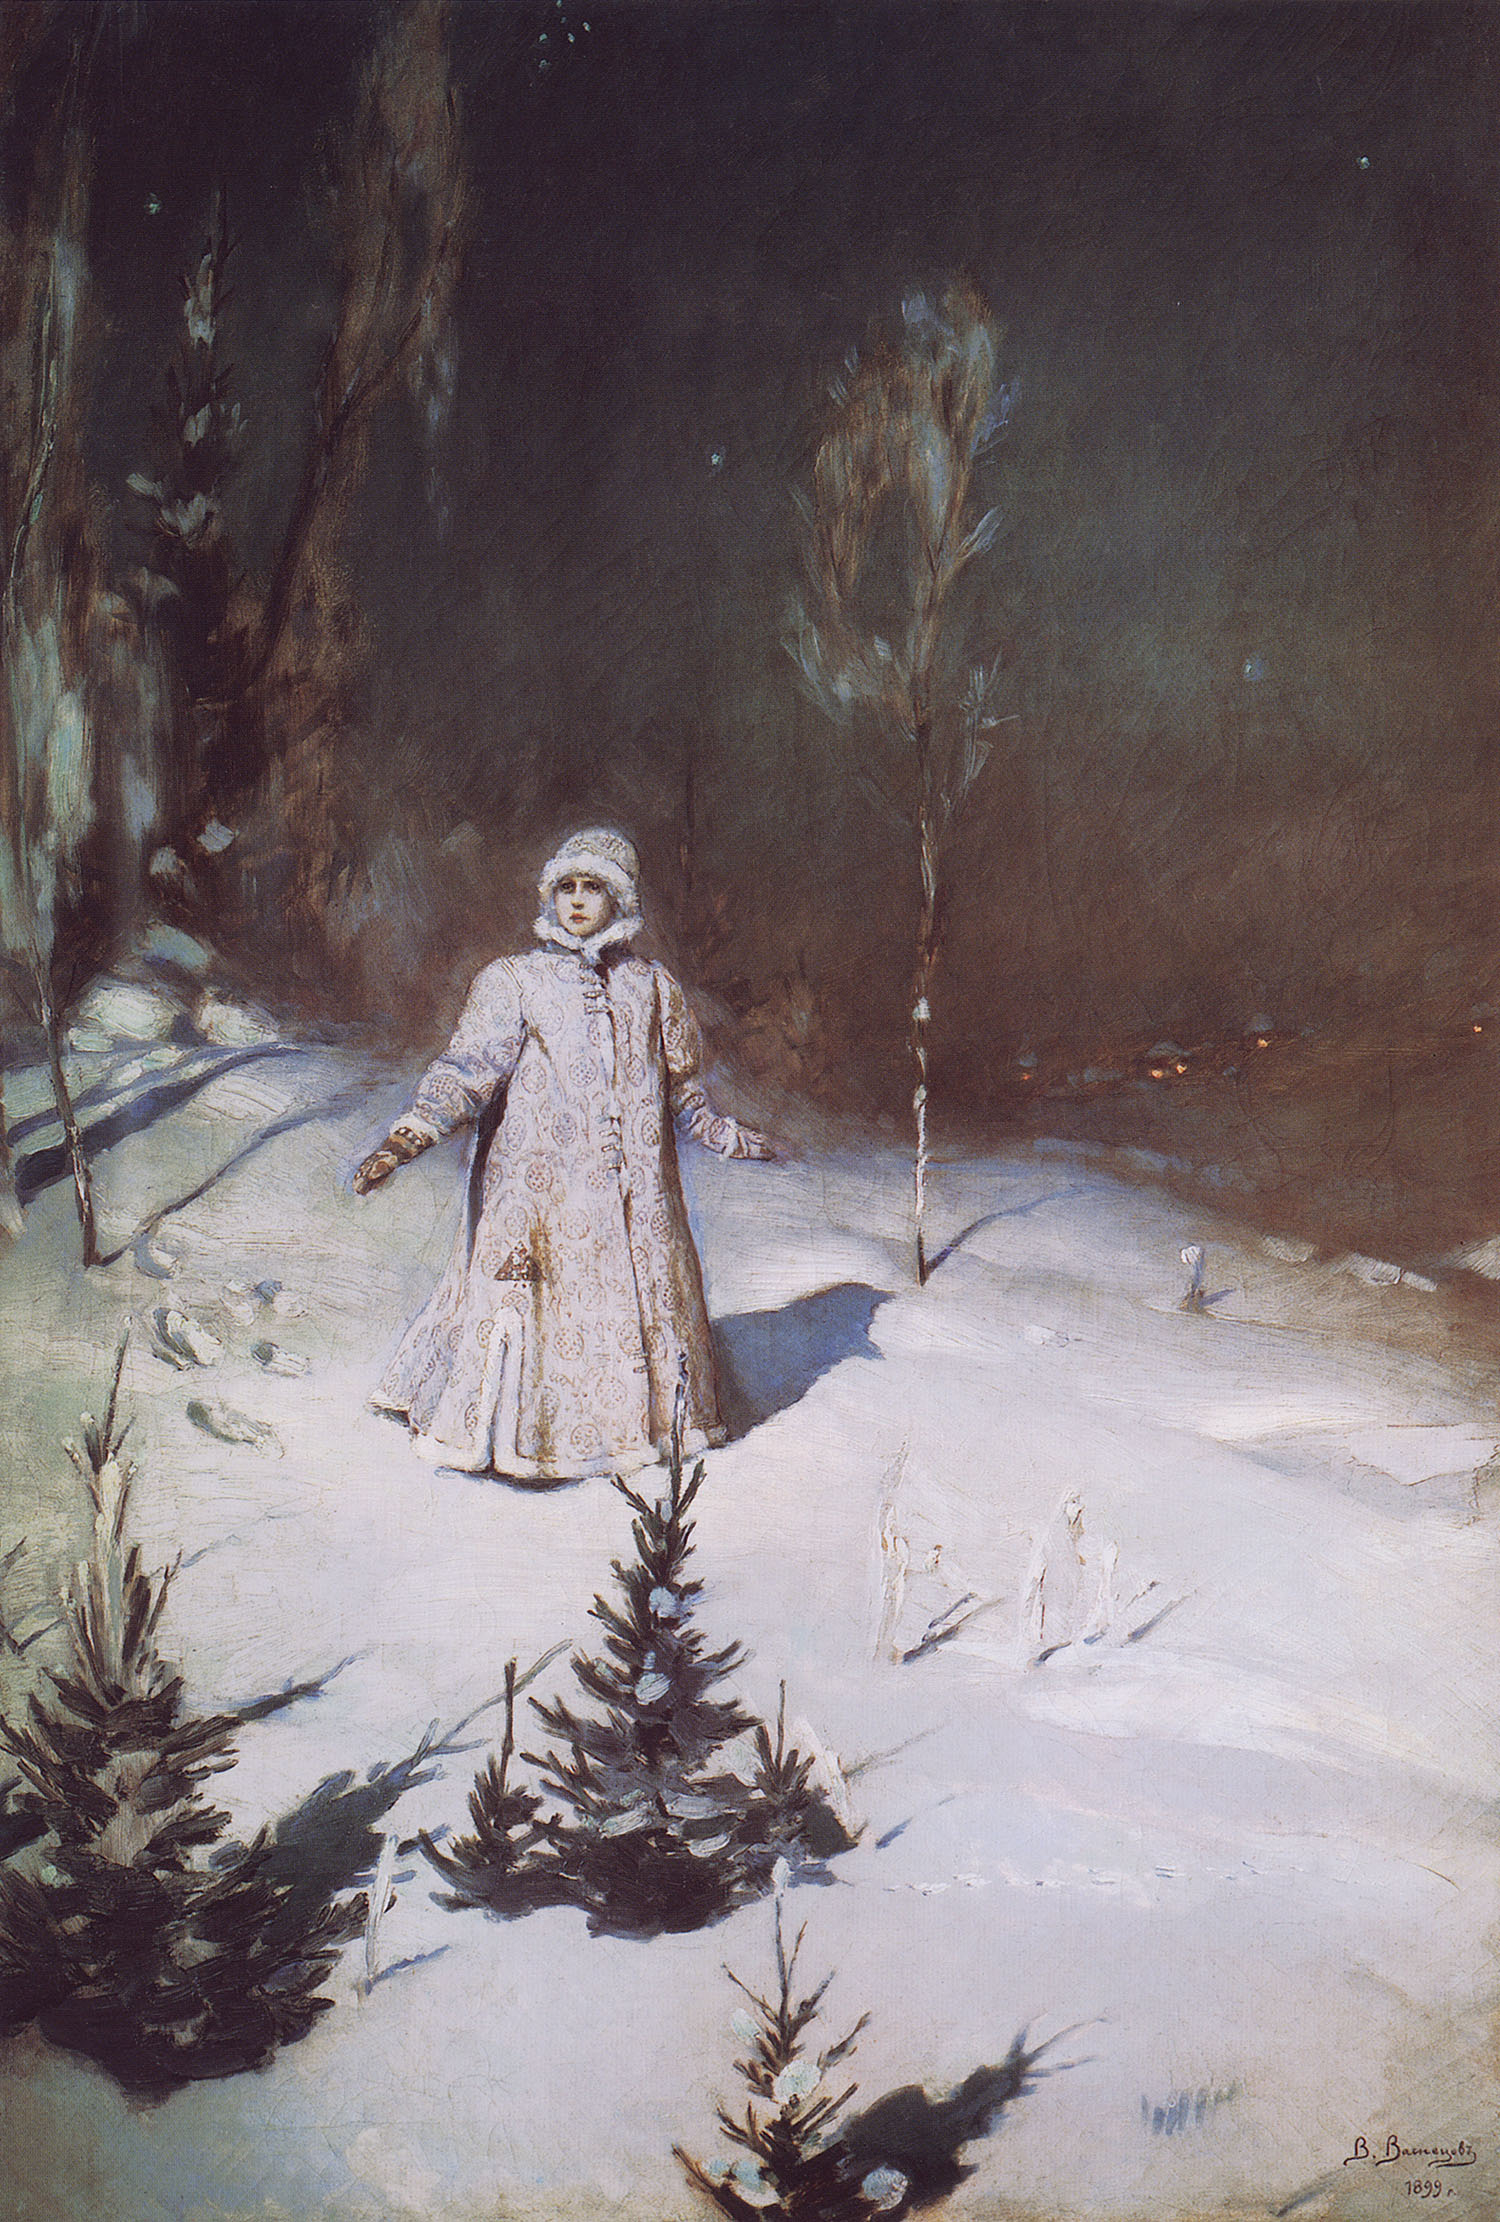 Васнецов В.. Снегурочка. 1899